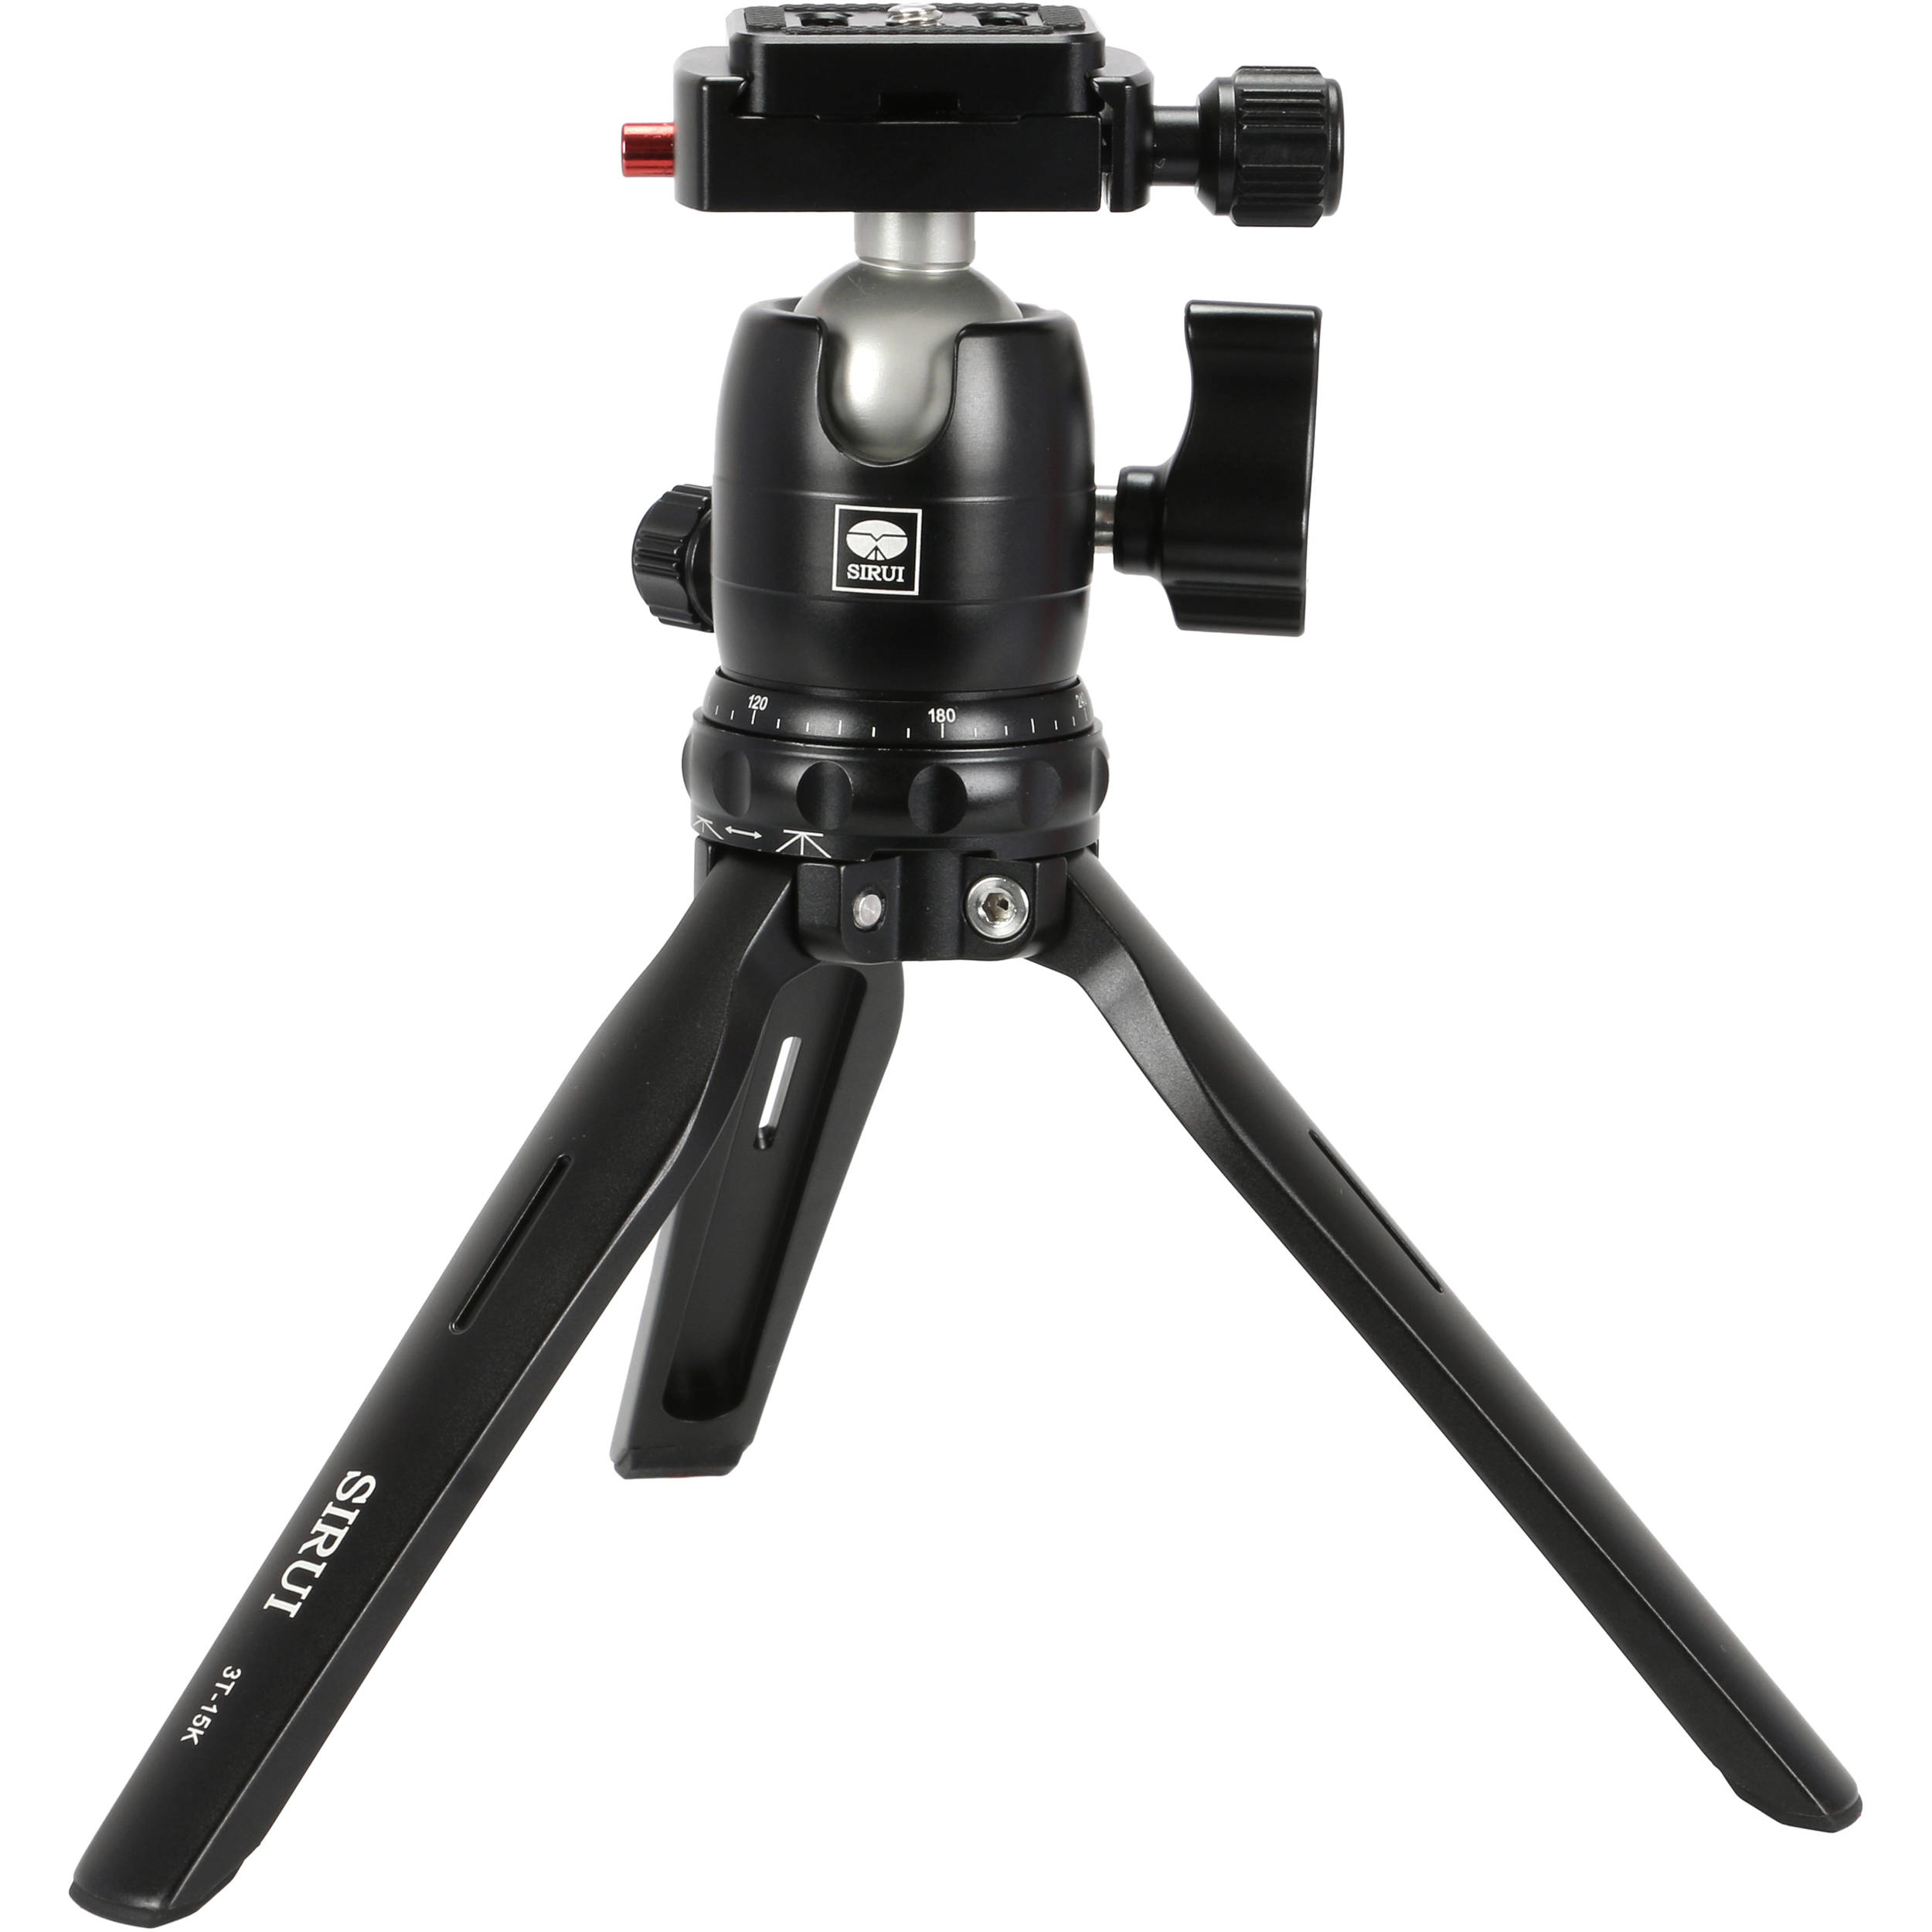 Chân máy mini tripod Sirui 3T-15K cho máy ảnh, máy quay, điện thoại